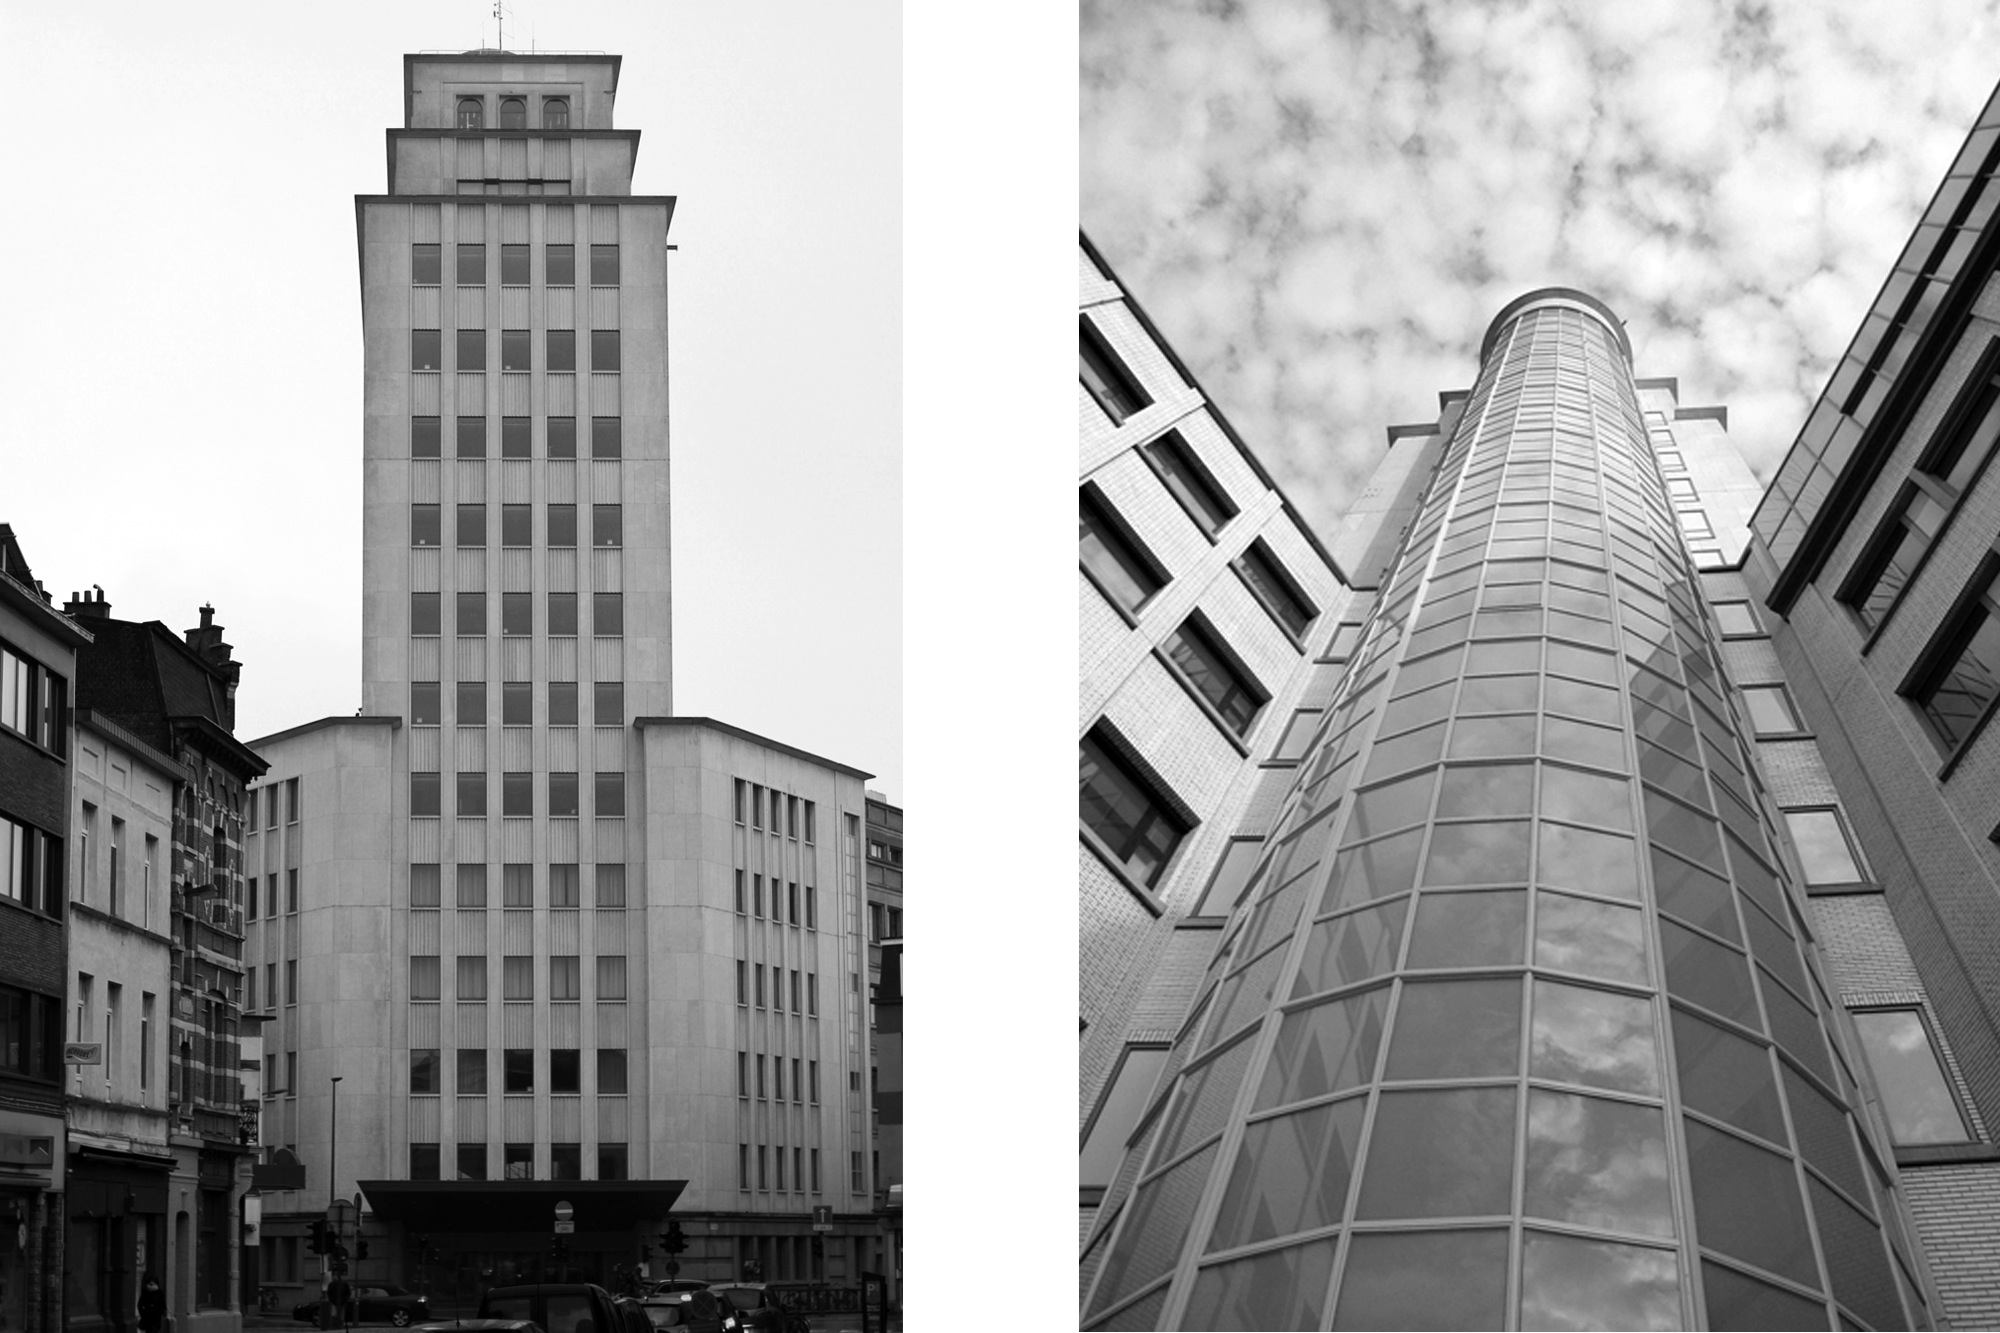 Der geschätzte belgische Funktionalist Hugo Van Kuyck errichtete den Bell Tower in den 1960er-Jahren. Das Gebäude wurde ursprünglich für die Telefongesellschaft Alcatel errichtet. Seit 2009 befinden sich in der renovierten Gebäudegruppe Verwaltungseinrichtungen der Stadt.